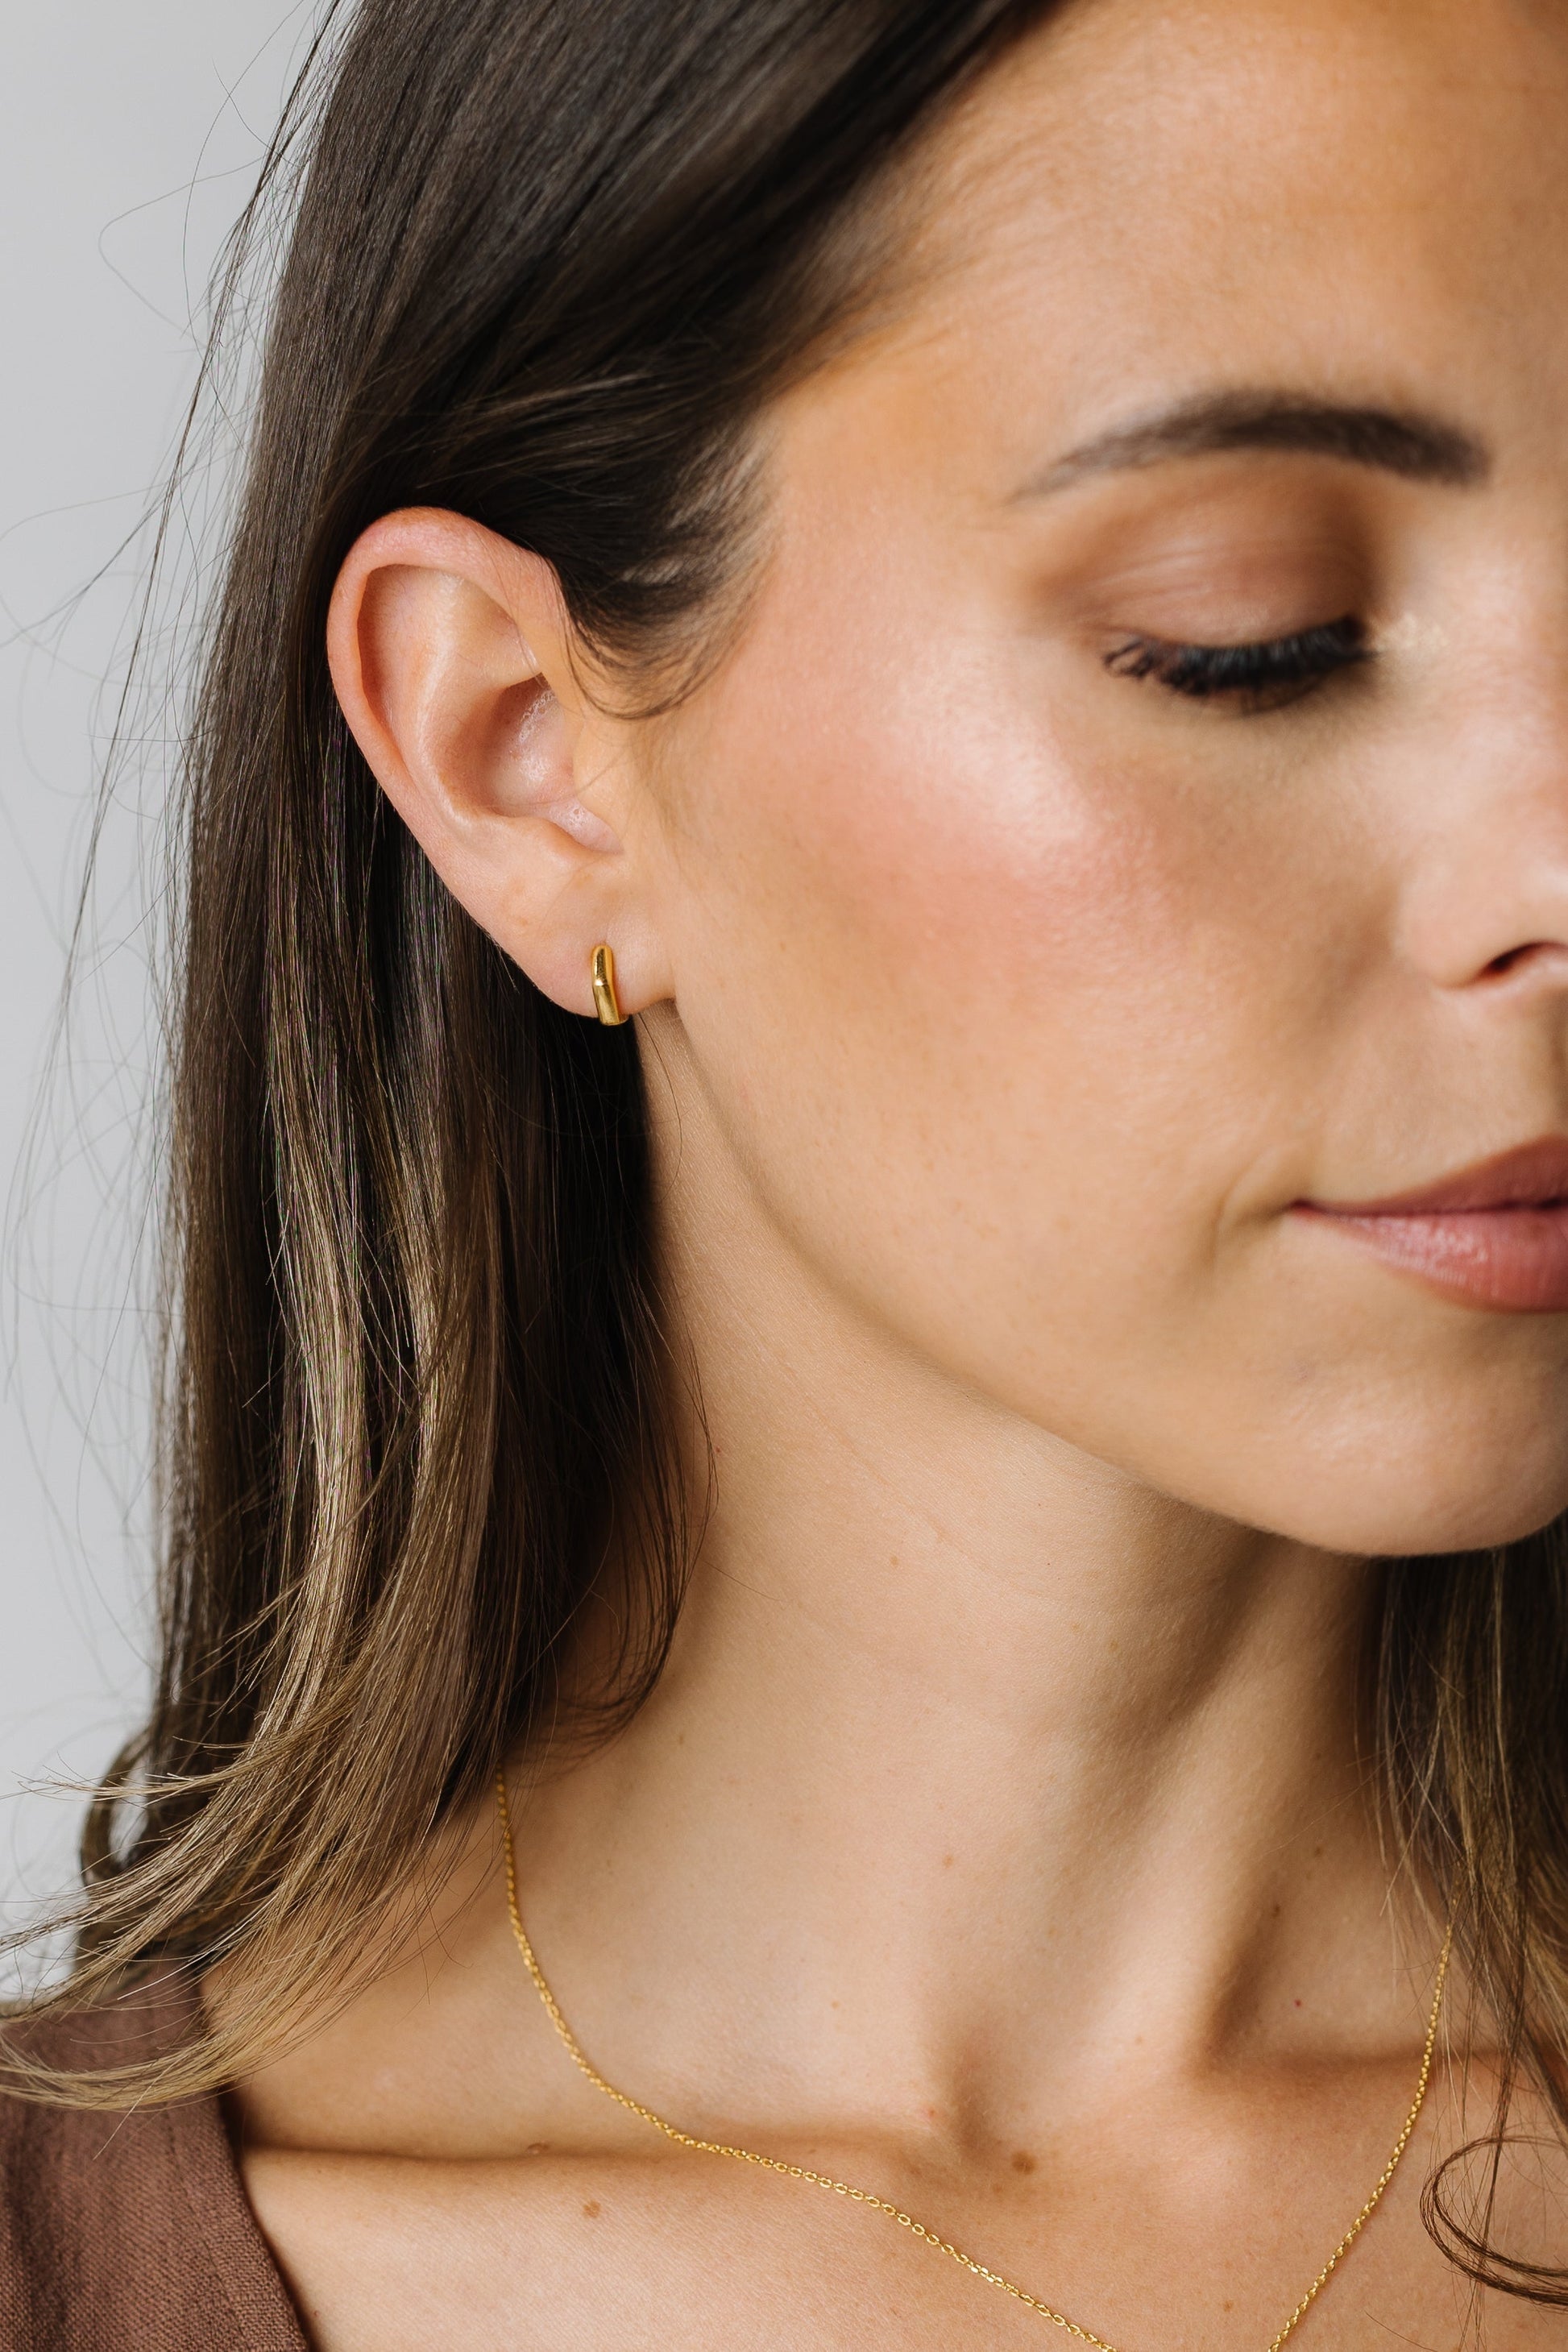 Cove Earrings Pentagon Hoop Gold WOMEN'S EARINGS Cove Accessories 